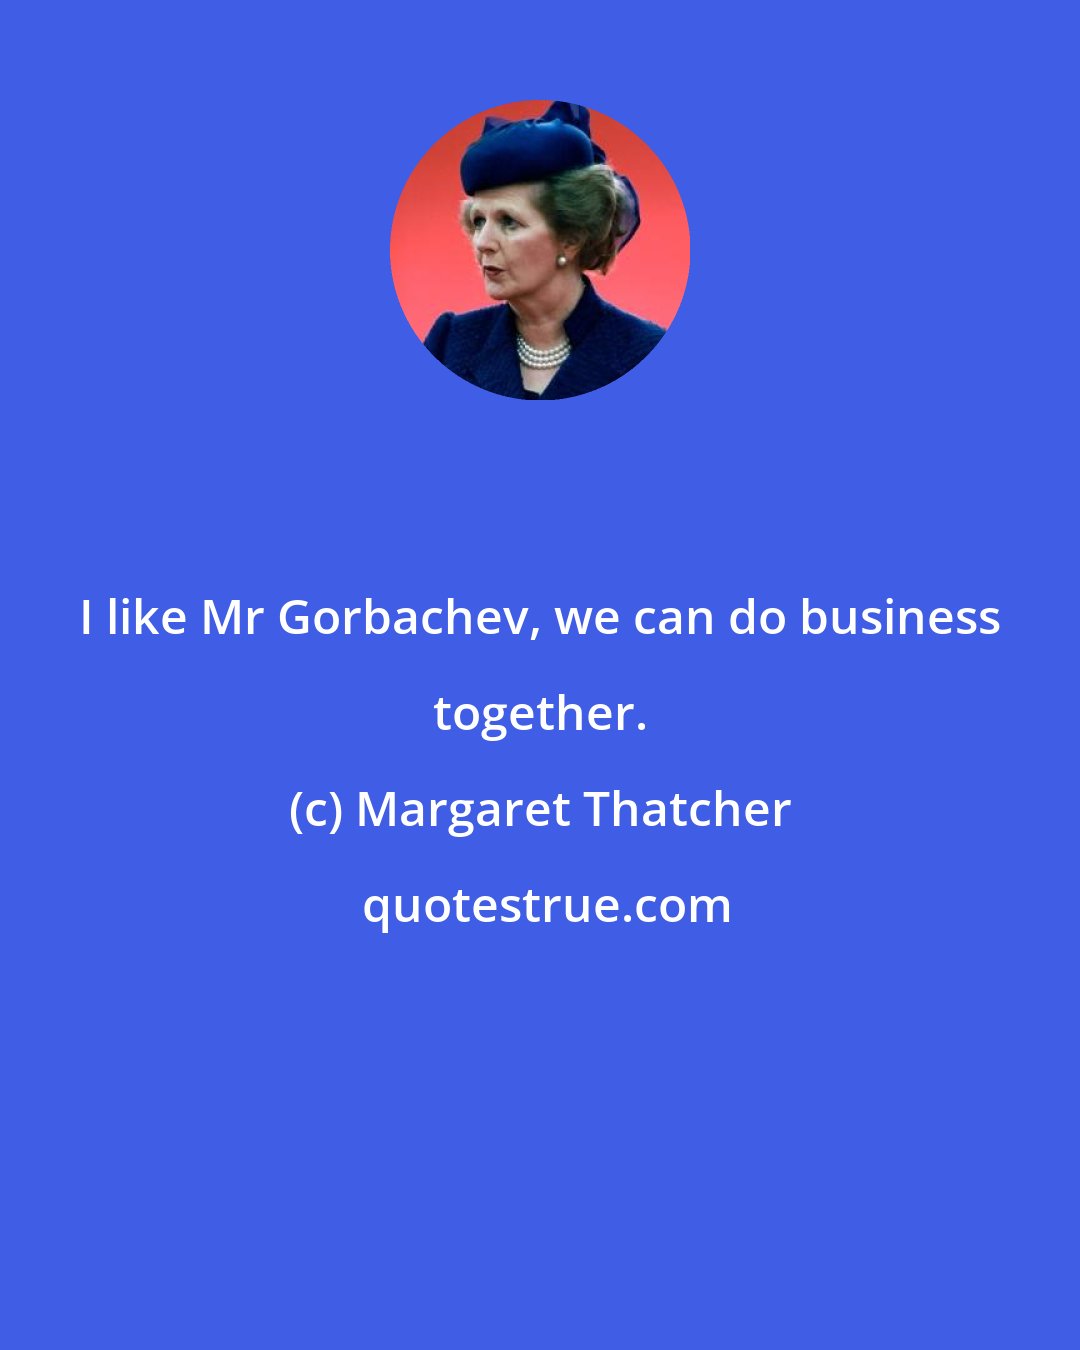 Margaret Thatcher: I like Mr Gorbachev, we can do business together.